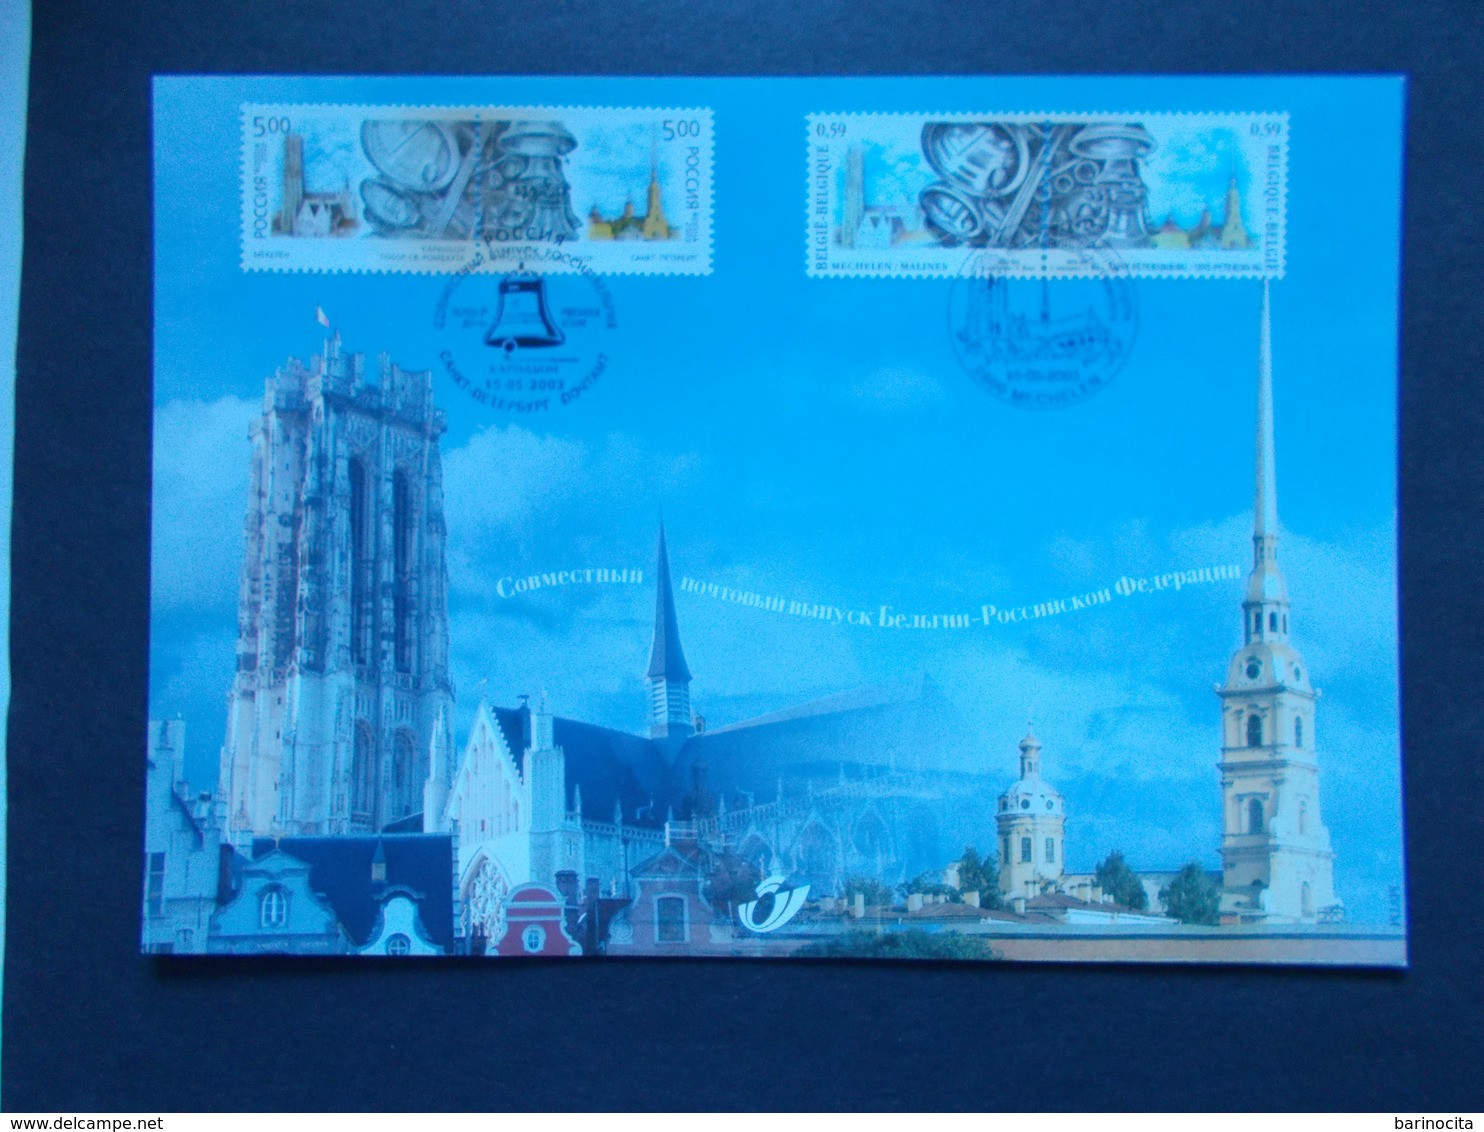 BELGIQUE -   N° 3170  HK  Année  2003   EMISSIONS  COMMUNES  RUSSIE    ( Voir Photo ) 68 - Souvenir Cards - Joint Issues [HK]